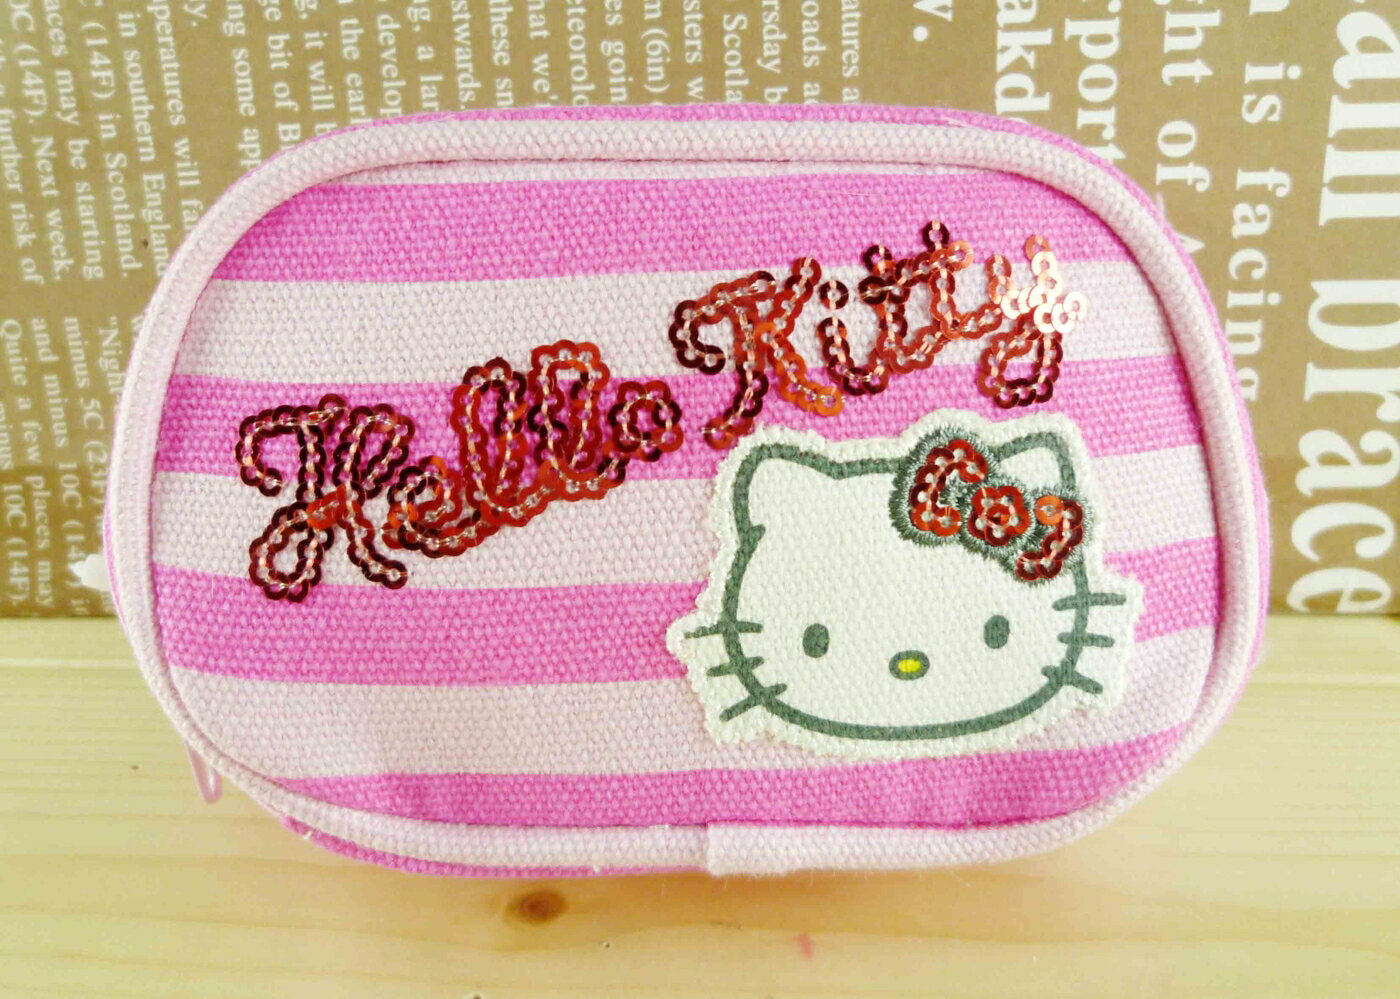 【震撼精品百貨】Hello Kitty 凱蒂貓-凱蒂貓零錢包-粉條紋 震撼日式精品百貨